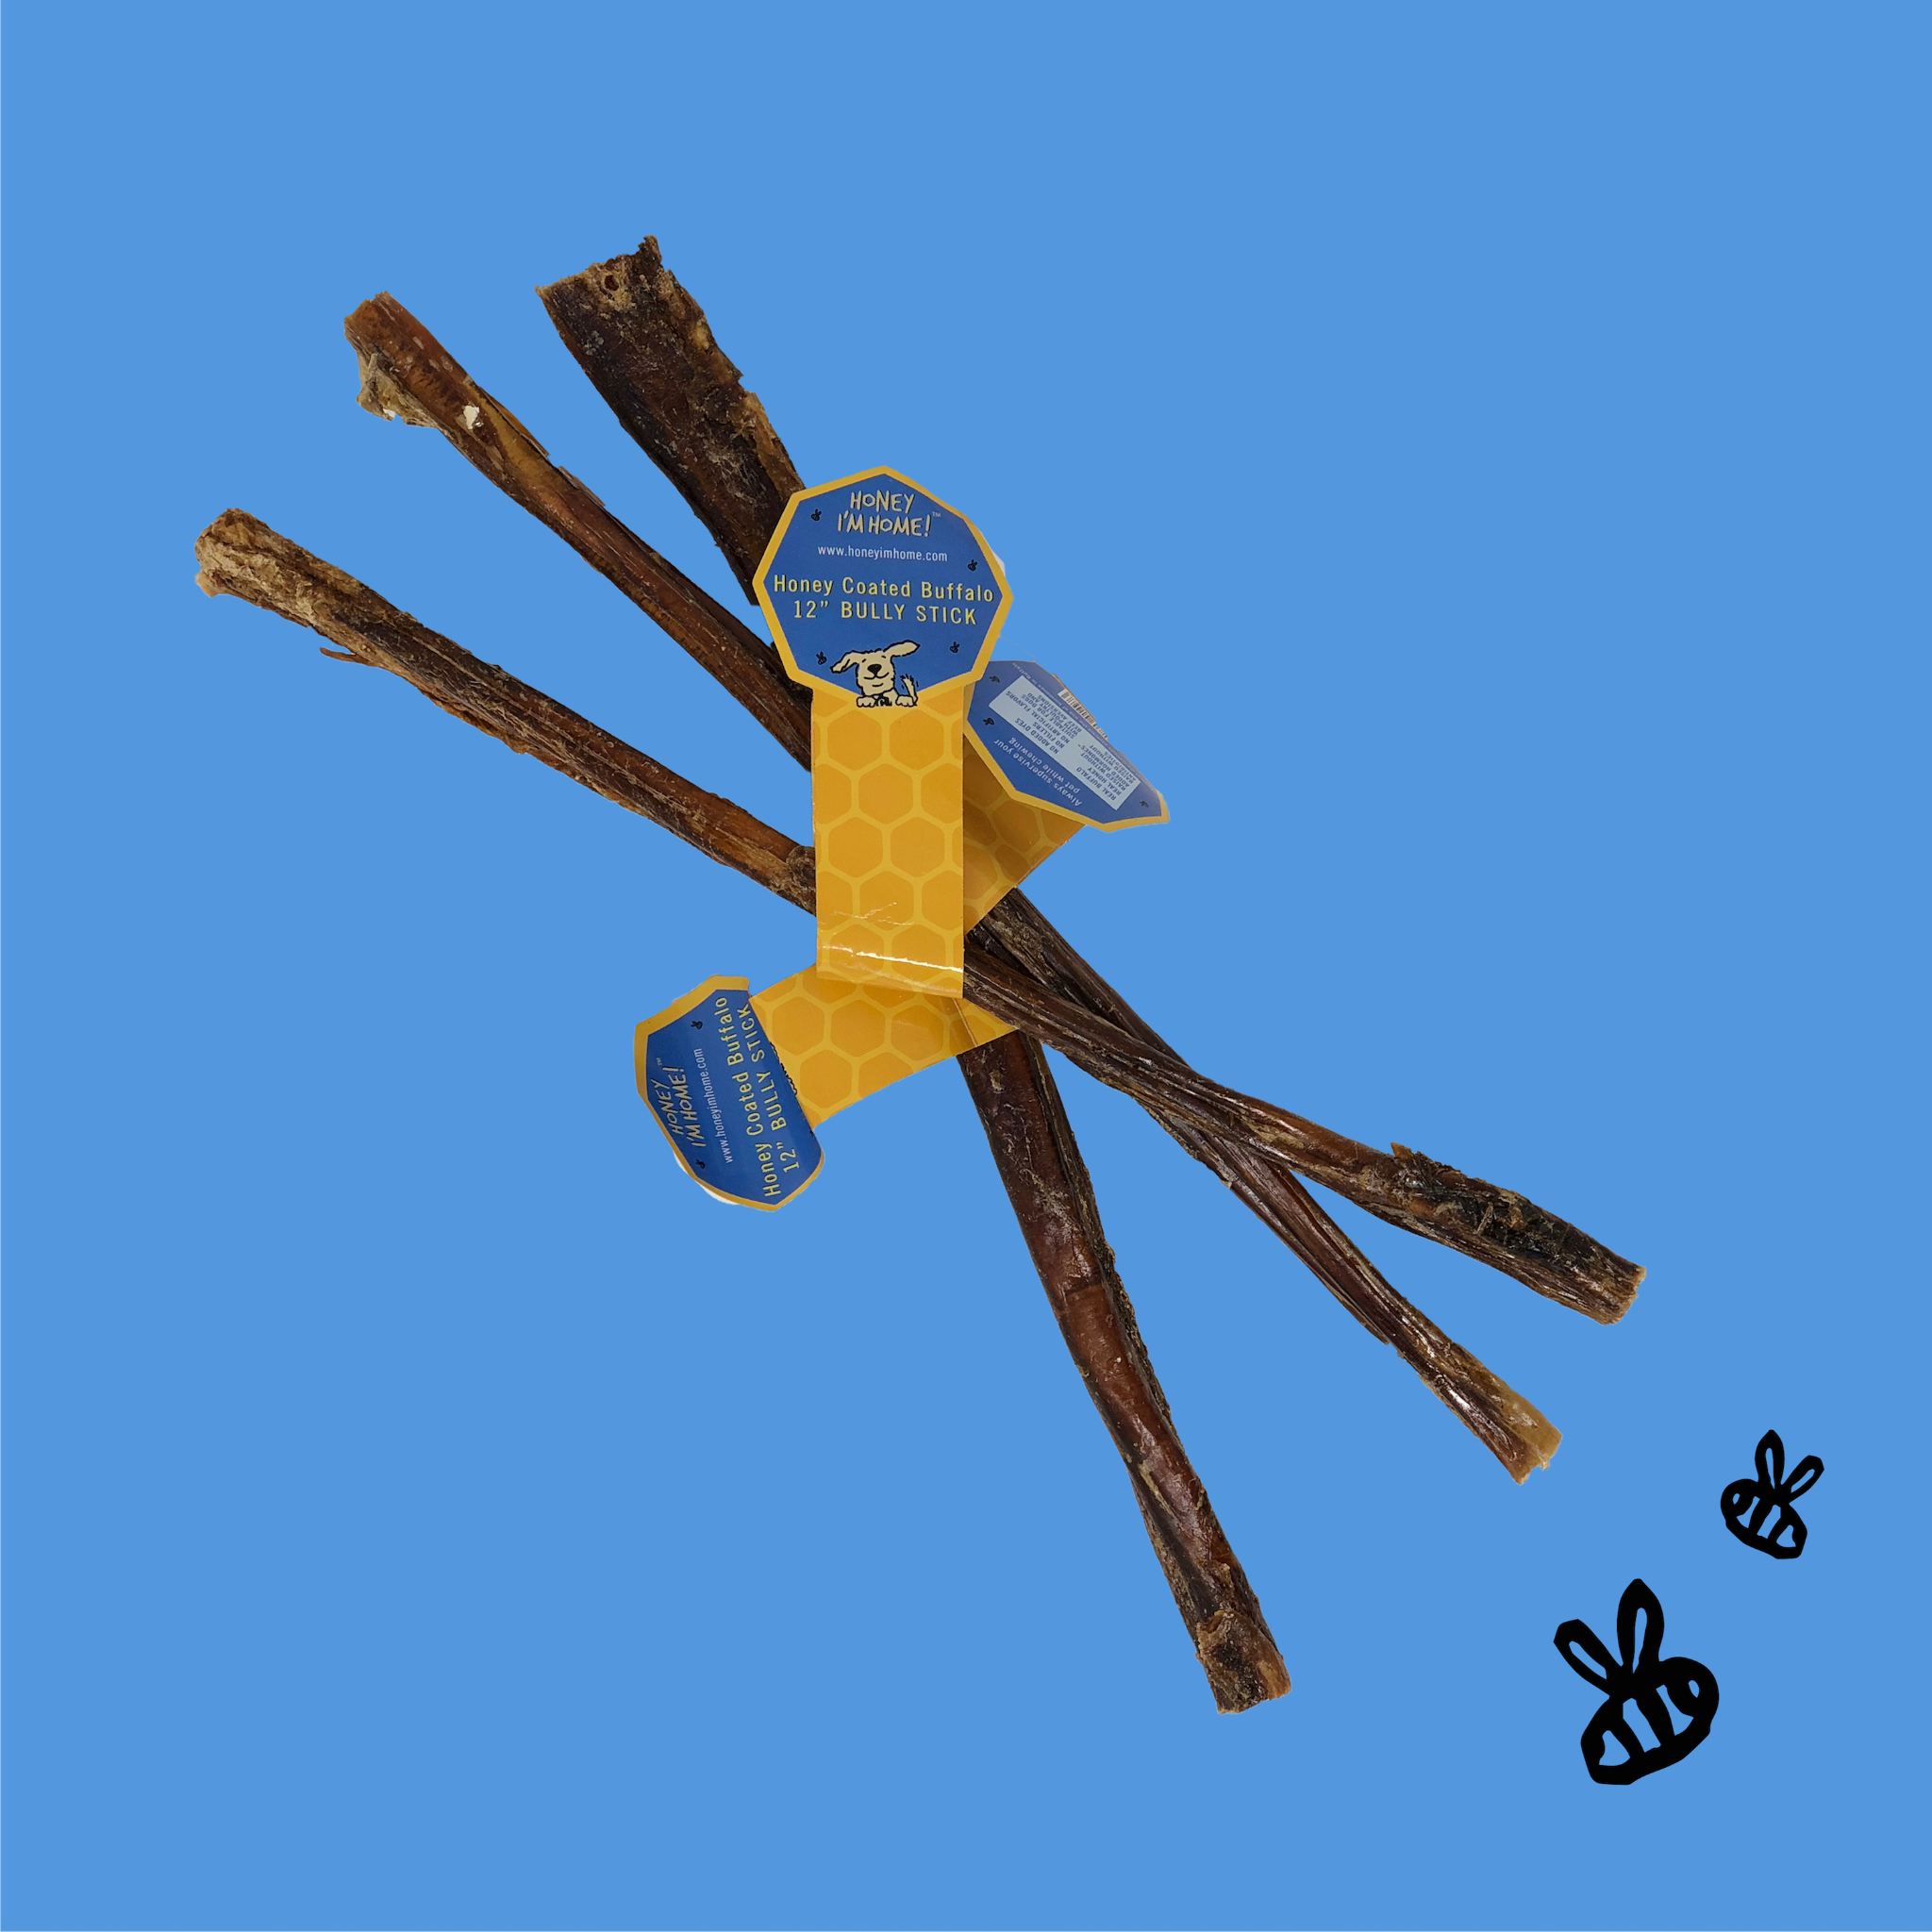 3 single, 12" honey coated buffalo bully sticks from bulk box. yellow honeycomb tag with blue.